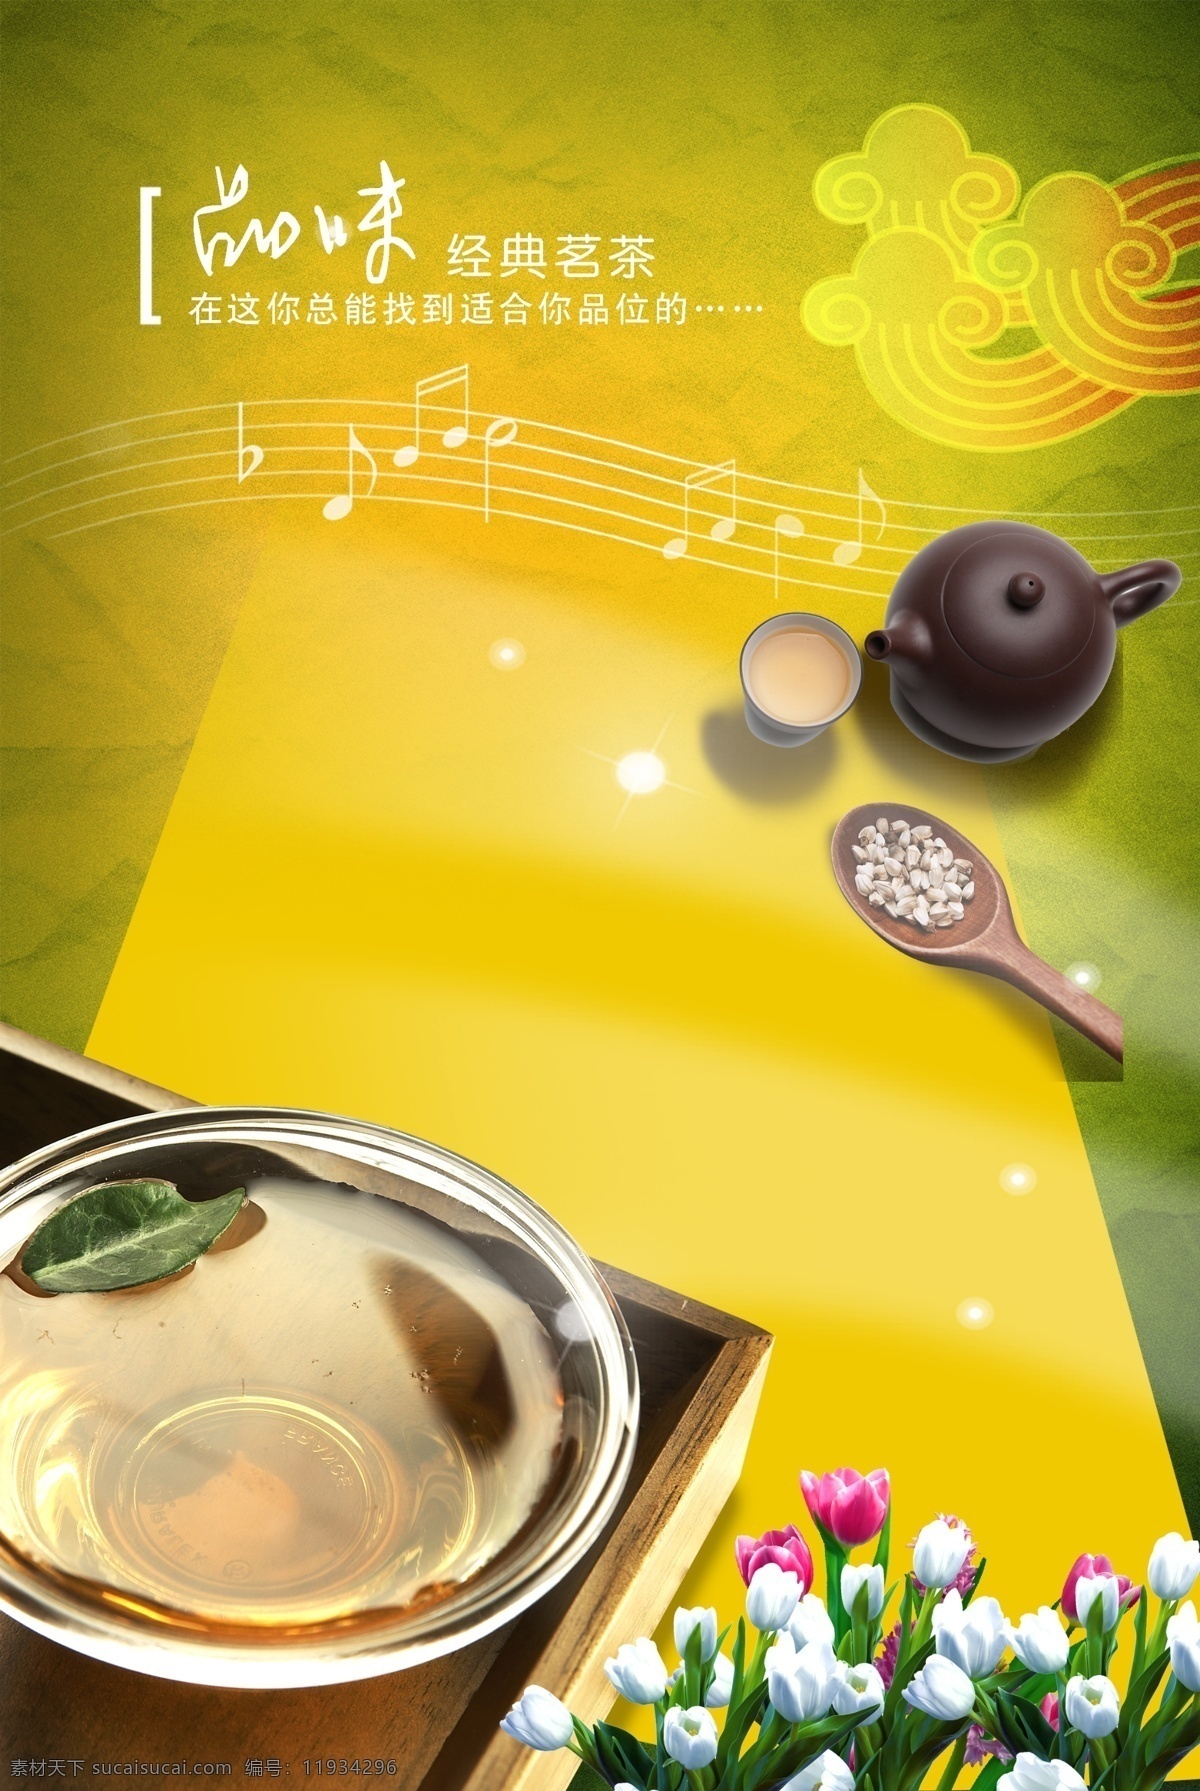 杯子 背景 茶壶 茶文化 茶叶 广告设计模板 花草 模板下载 中国元素 源文件 海报背景图